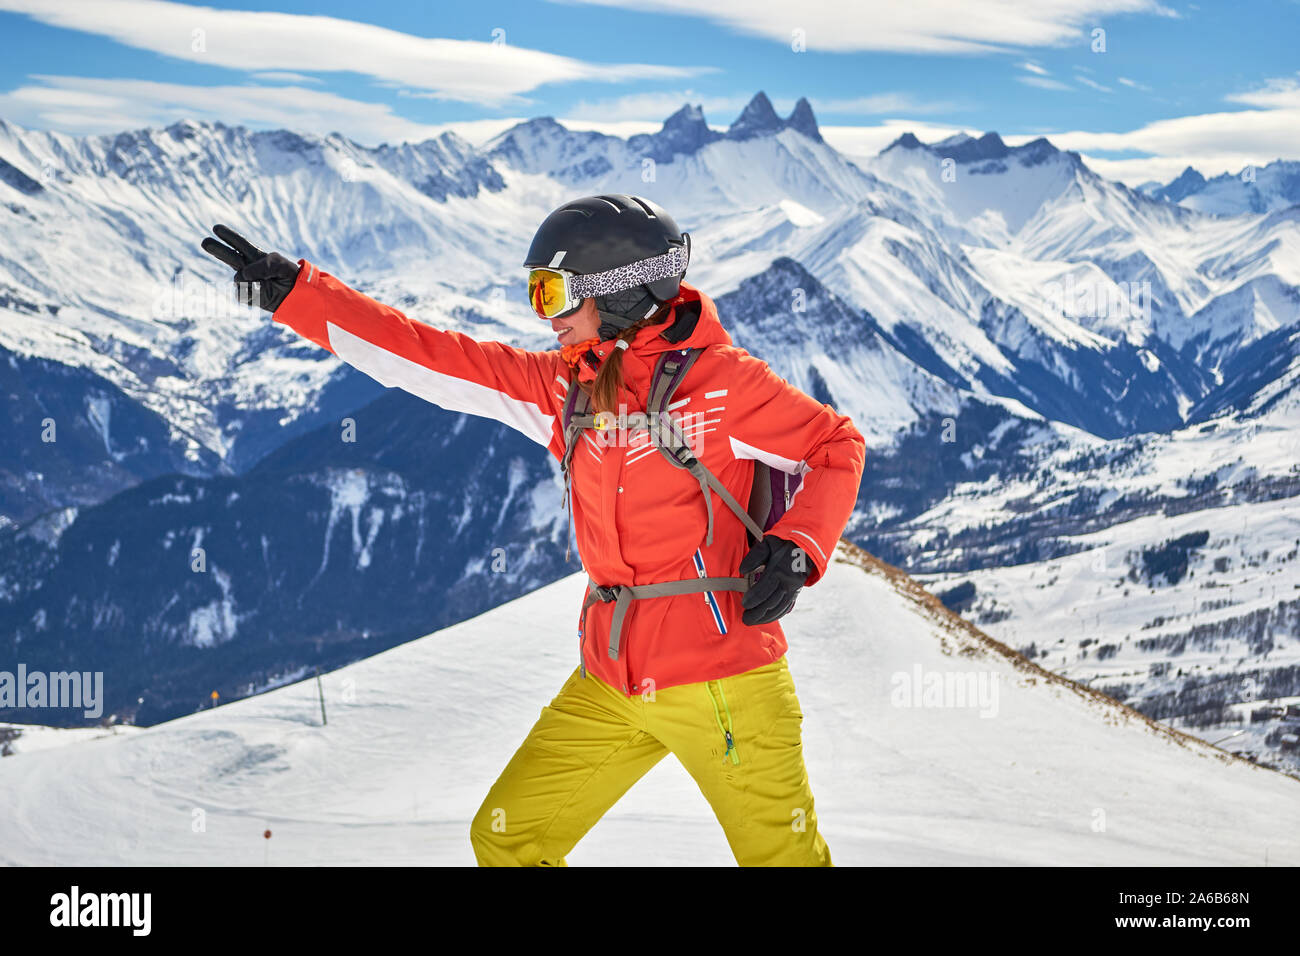 Frau Skifahrer lächelnd und im Les Sybelles Skigebiet posiert, mit Aiguilles d'Arves Gipfeln im Hintergrund, an einem sonnigen Tag mit blauem Himmel. Stockfoto